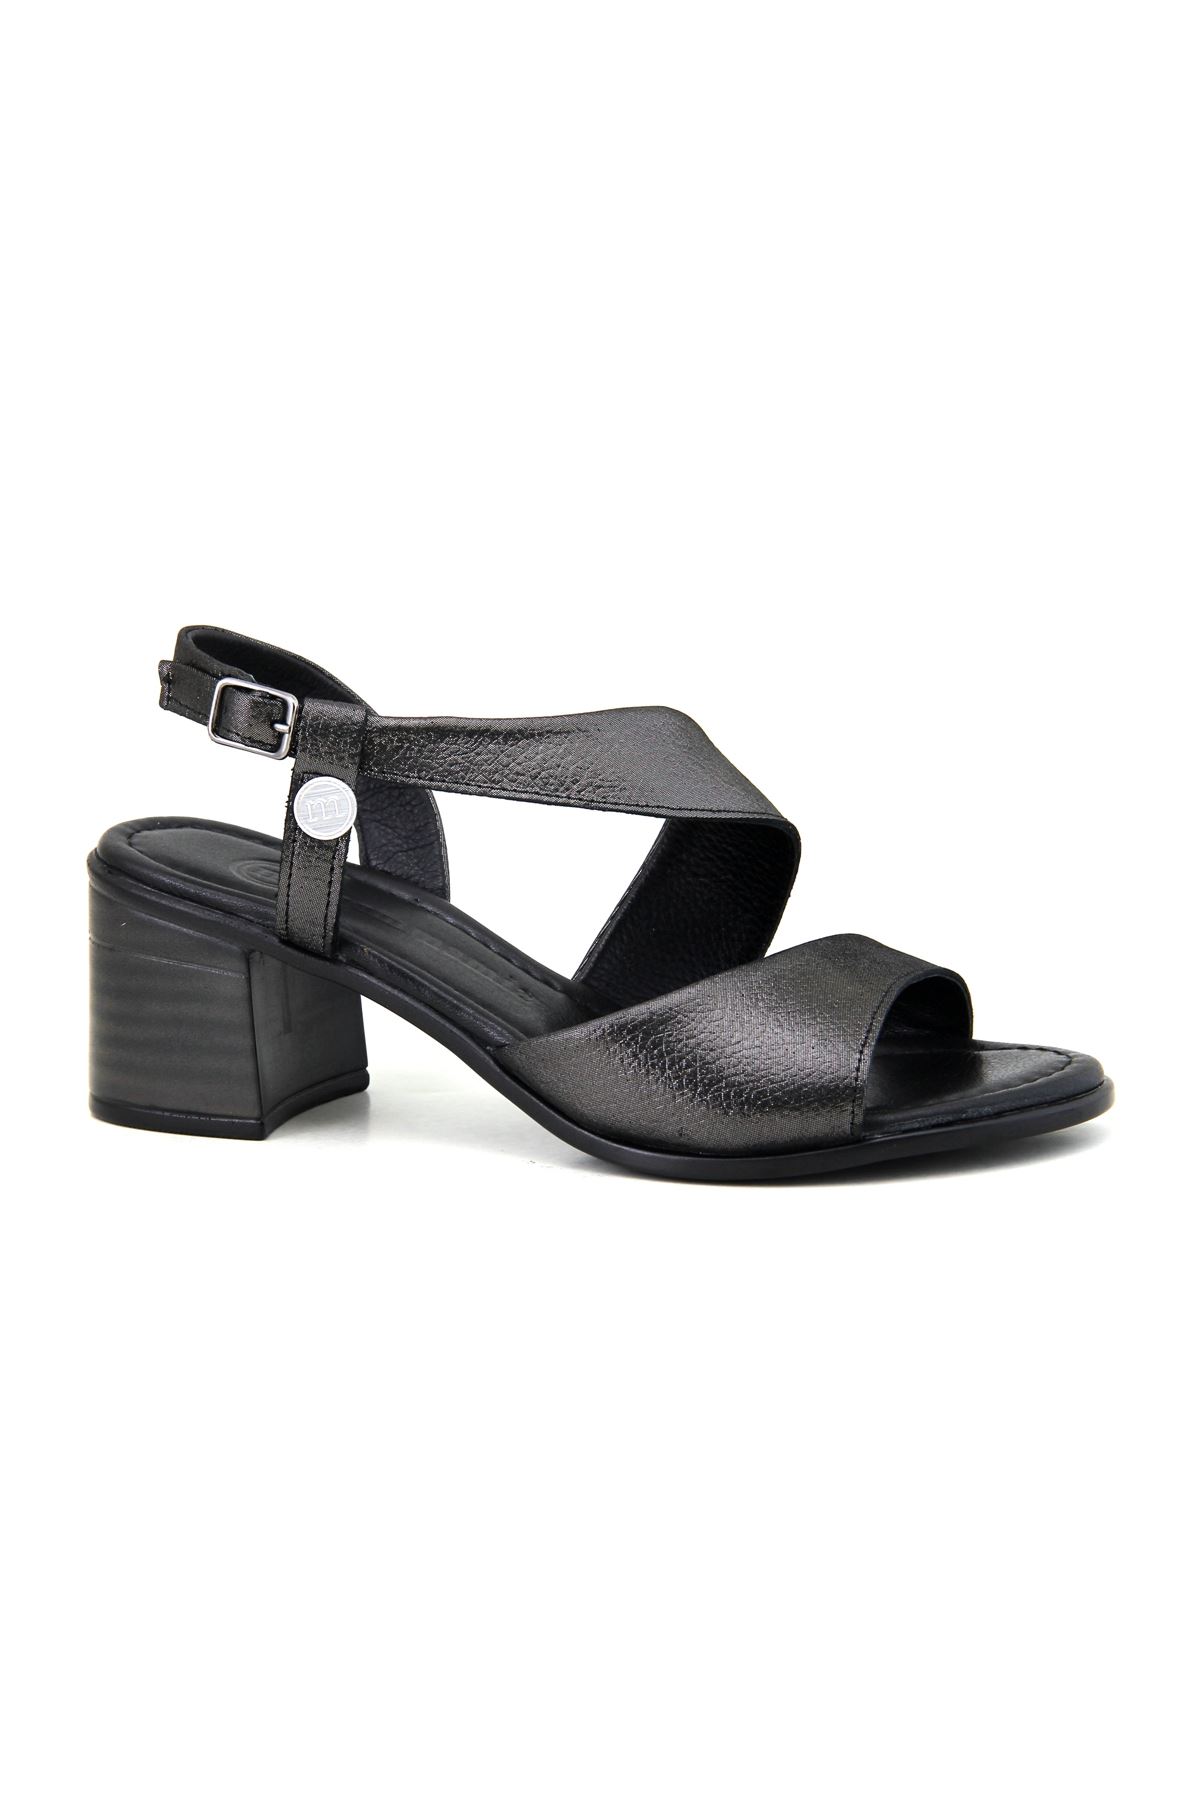 Mammamia D23YS-1320 Hakiki Deri Kadın Sandalet - Siyah Çelik